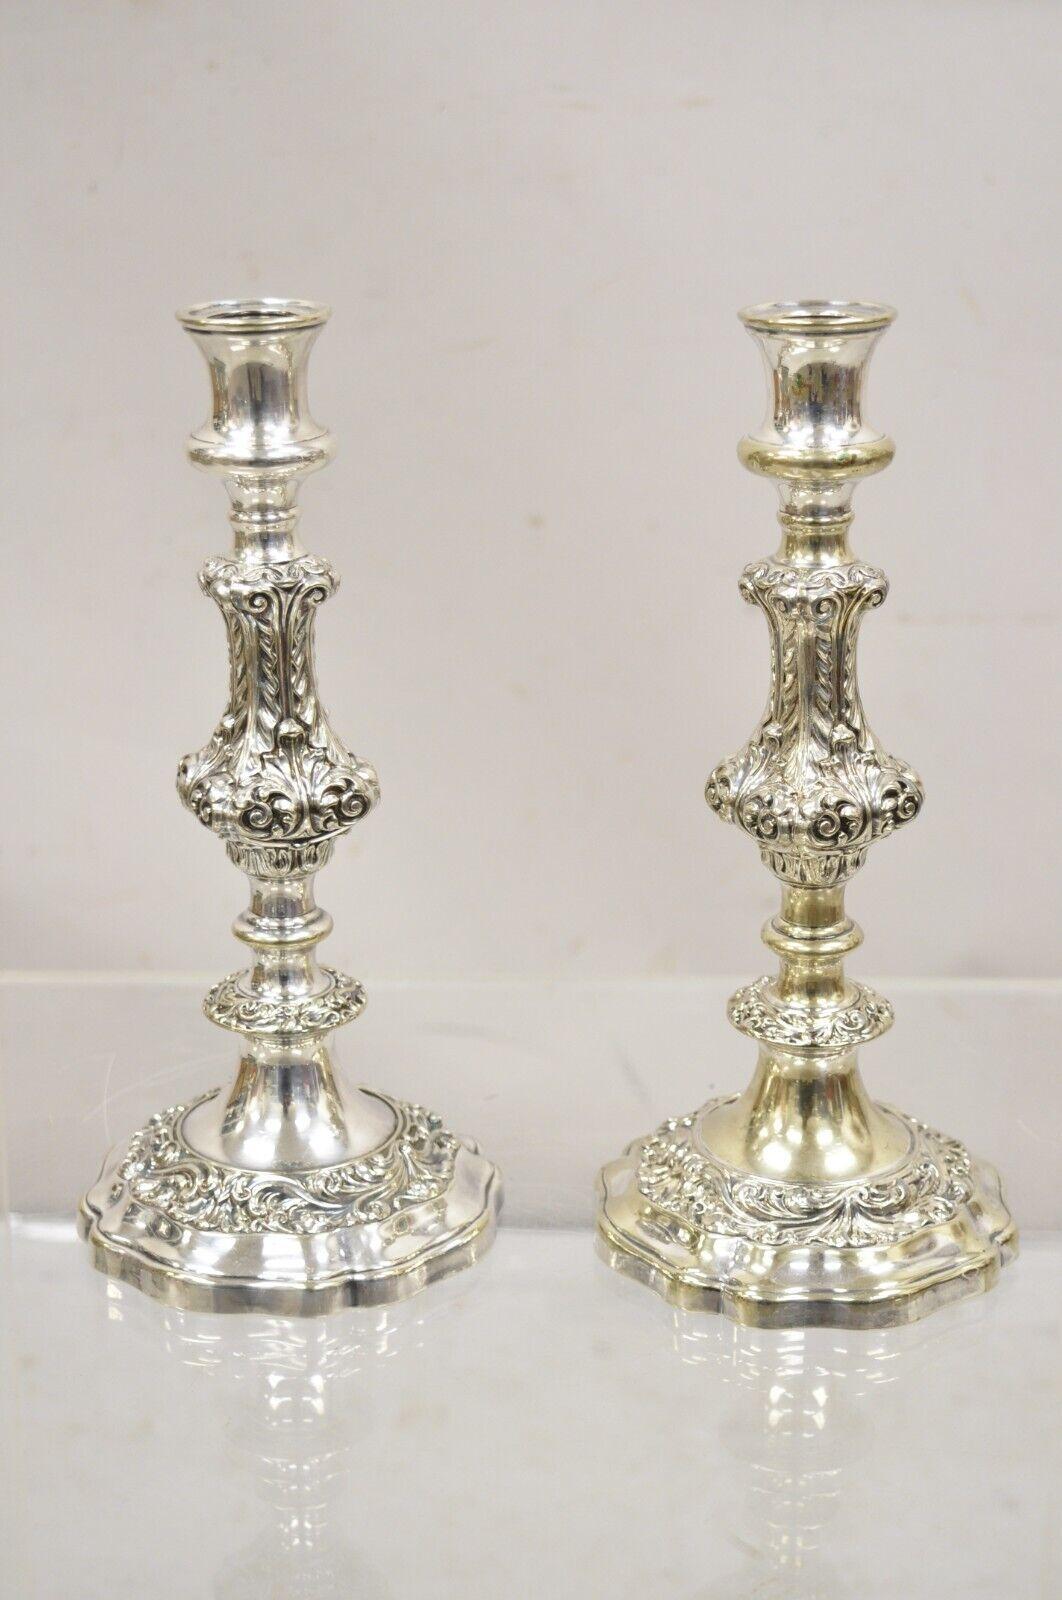 Paire de chandeliers à bougie unique en métal argenté repoussé de style baroque Vintage de Gorham.